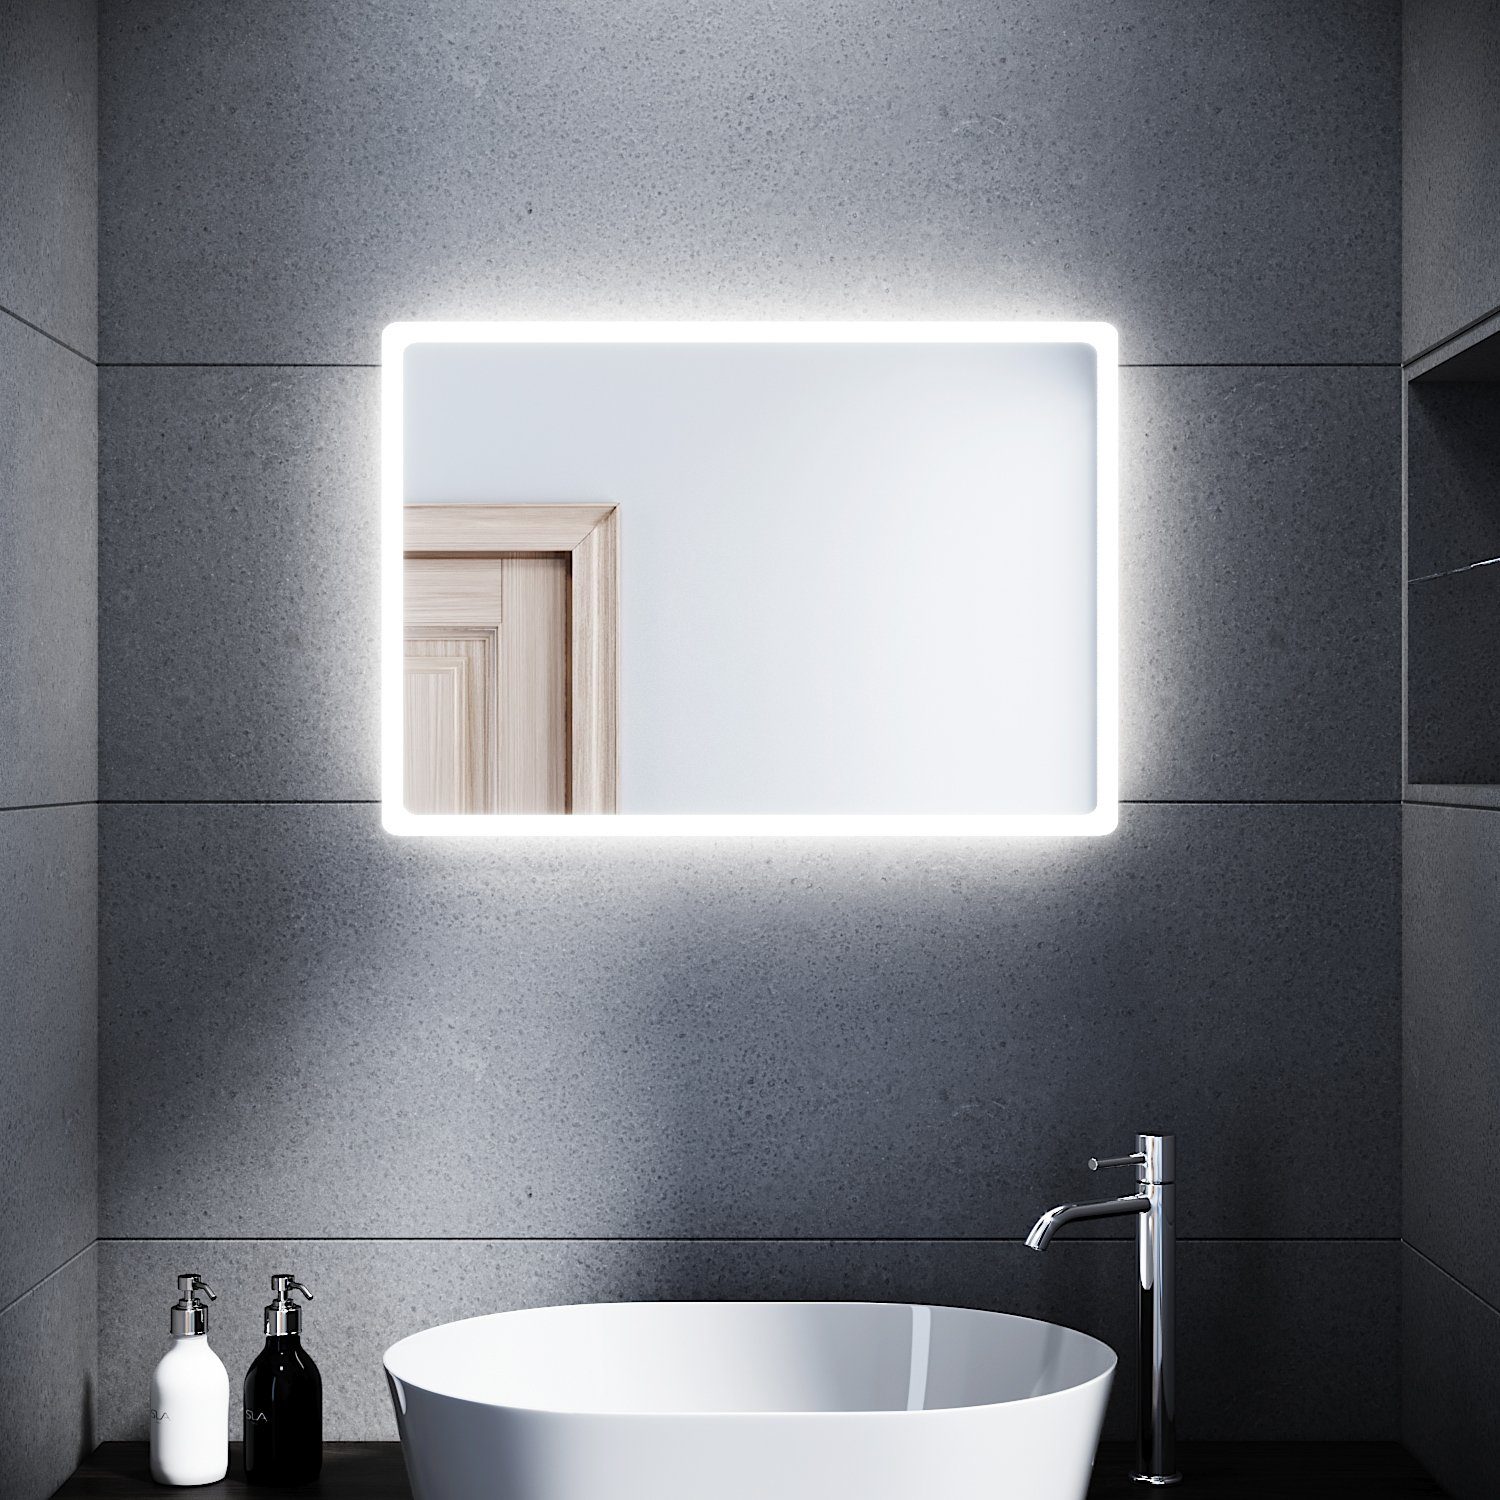 SONNI Badspiegel Badspiegel mit Beleuchtung 80 x 60 cm Wandspiegel Spiegel, Badezimmerspiegel kaltweiß IP44 Badezimmer Bad Spiegel | Badspiegel